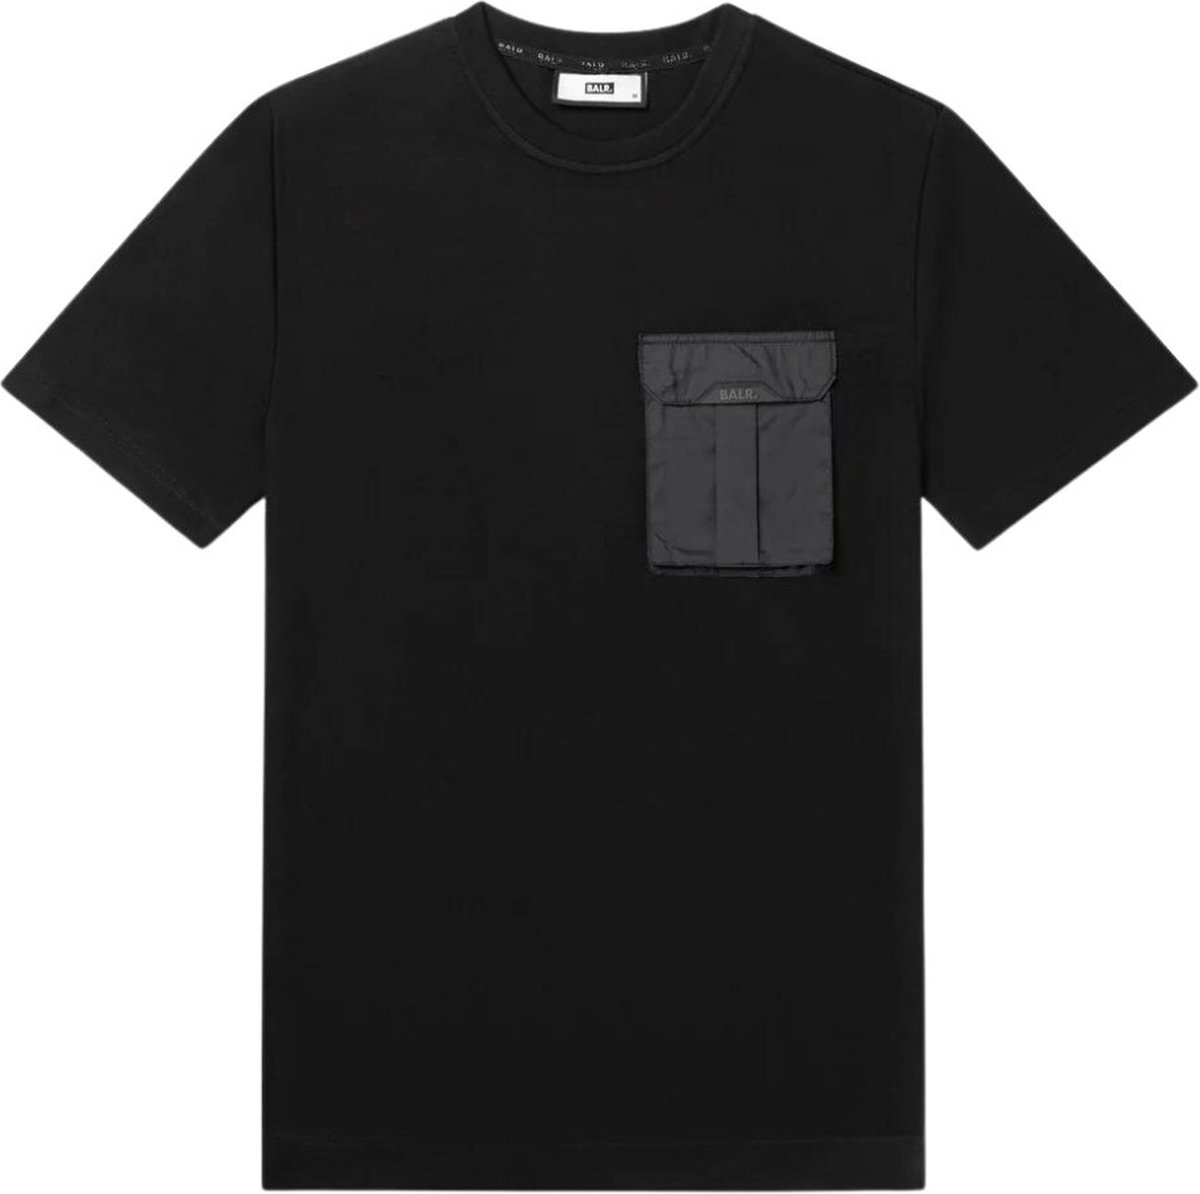 BALR. Shirt Zwart maat M Q-cargo t-shirts zwart